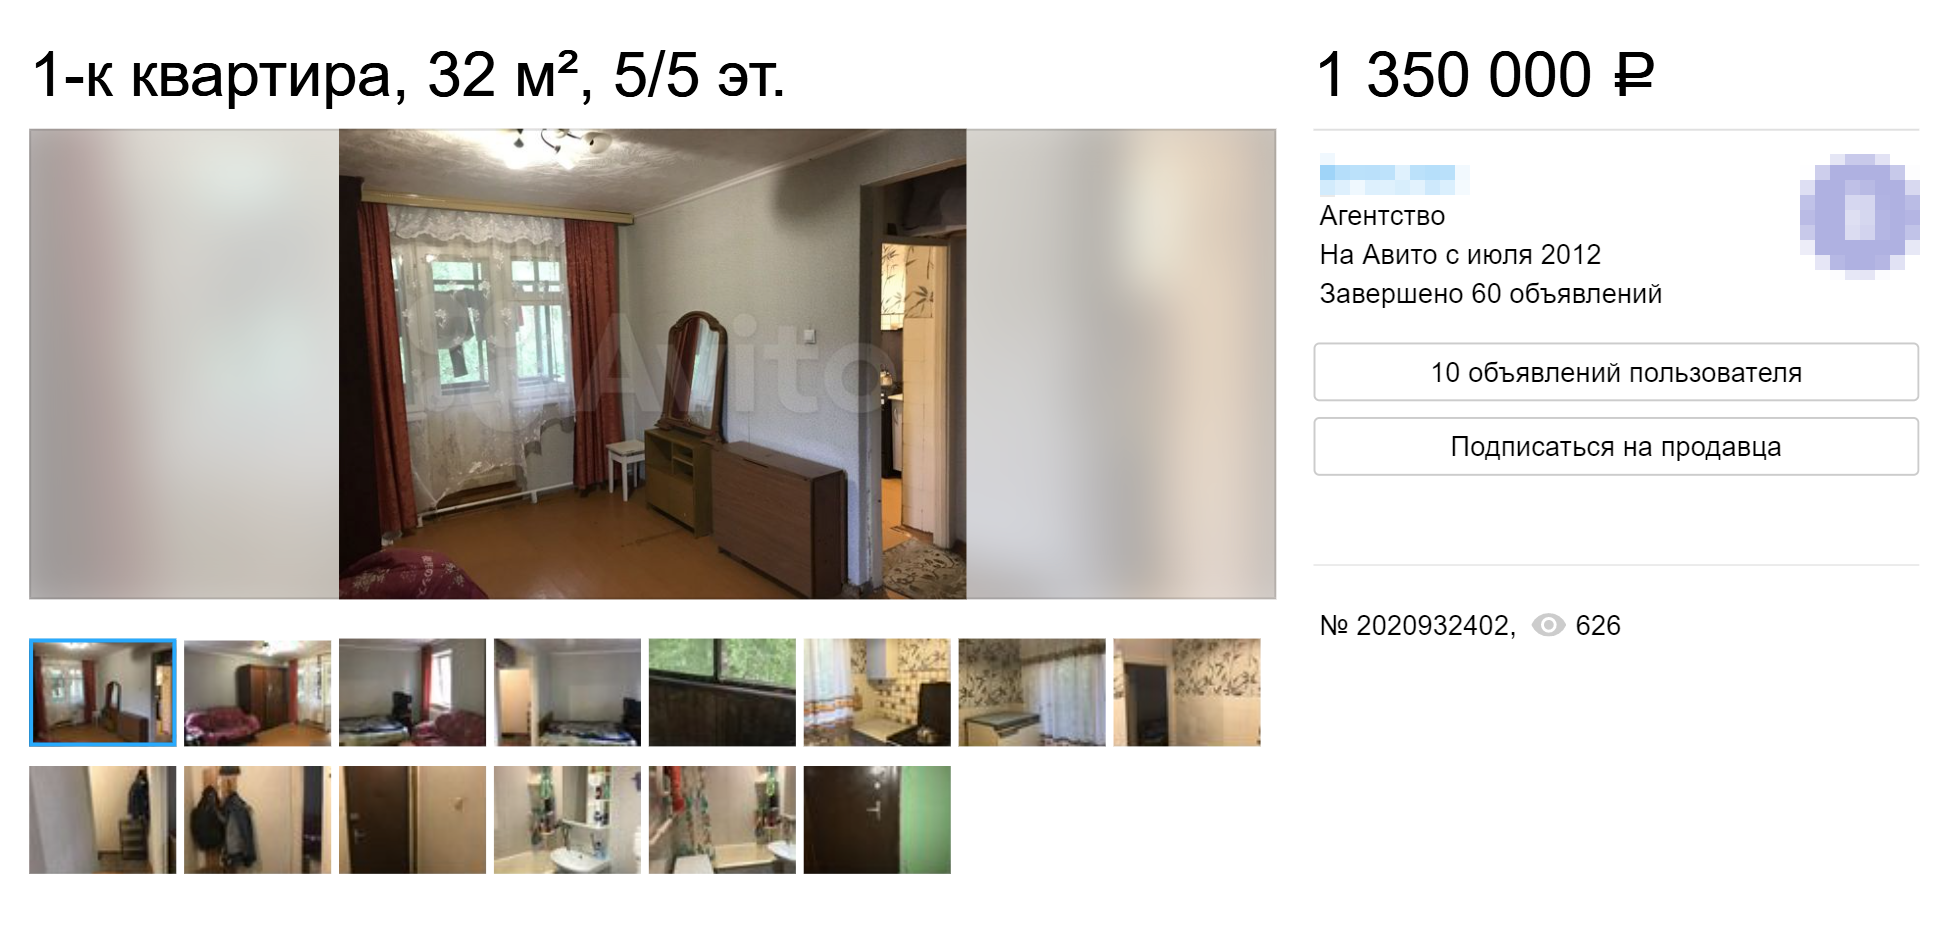 Однокомнатная квартира в панельной пятиэтажке в Железнодорожном районе стоит 1,4 млн рублей